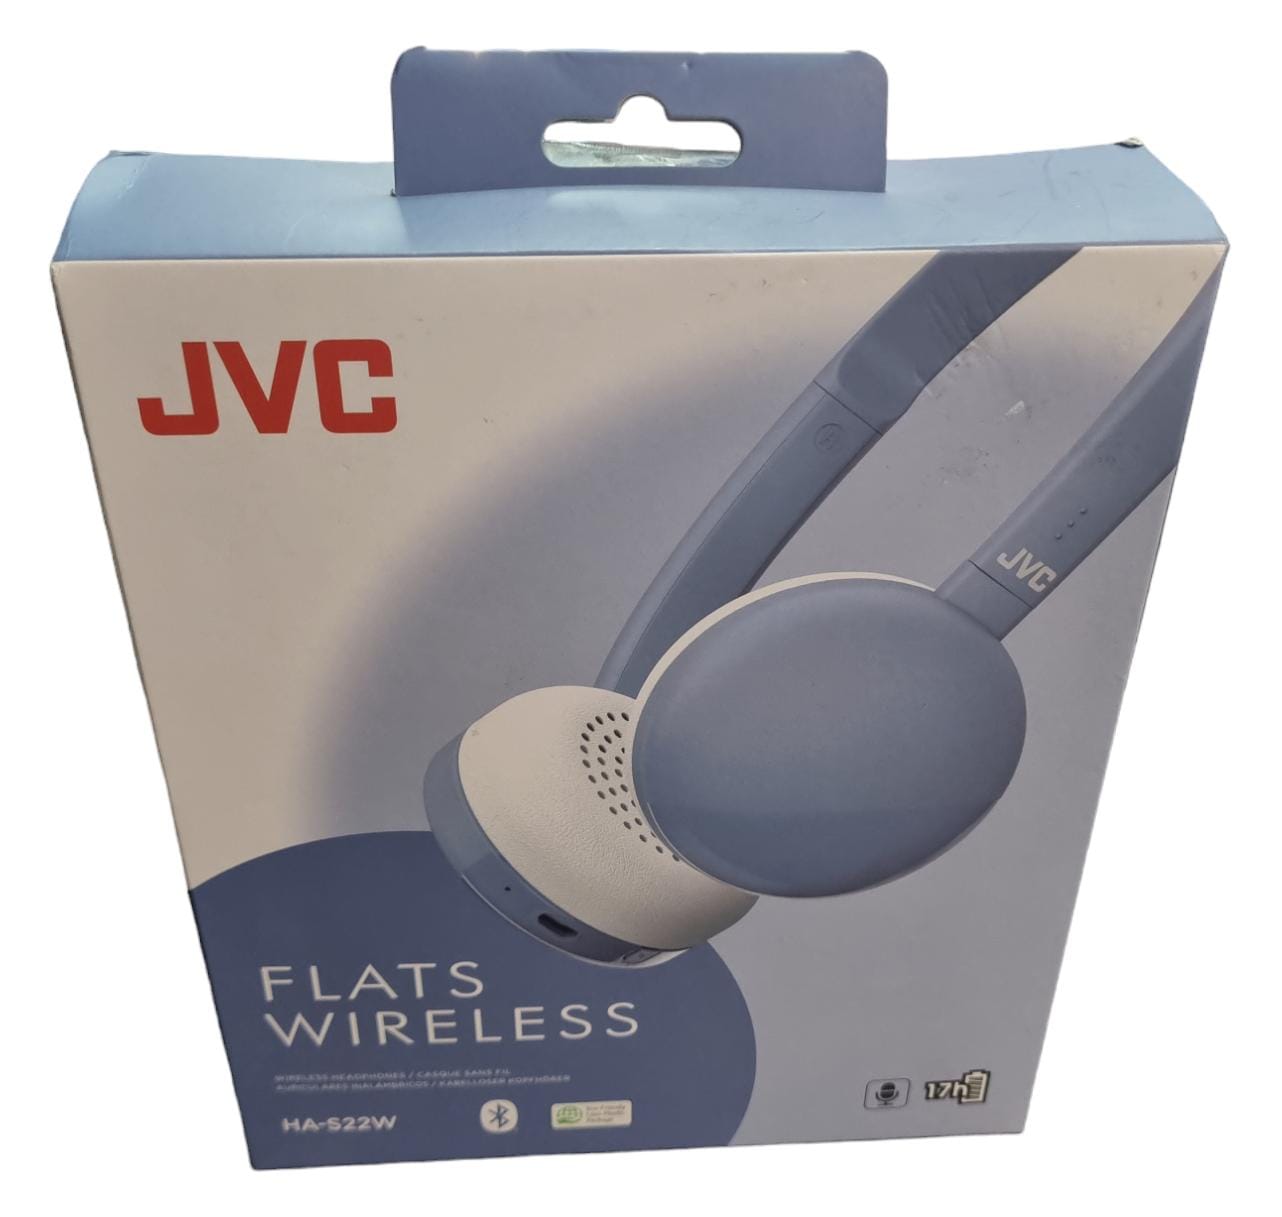 JVC Flats Wireless Headphones - HA-S22W - NEW